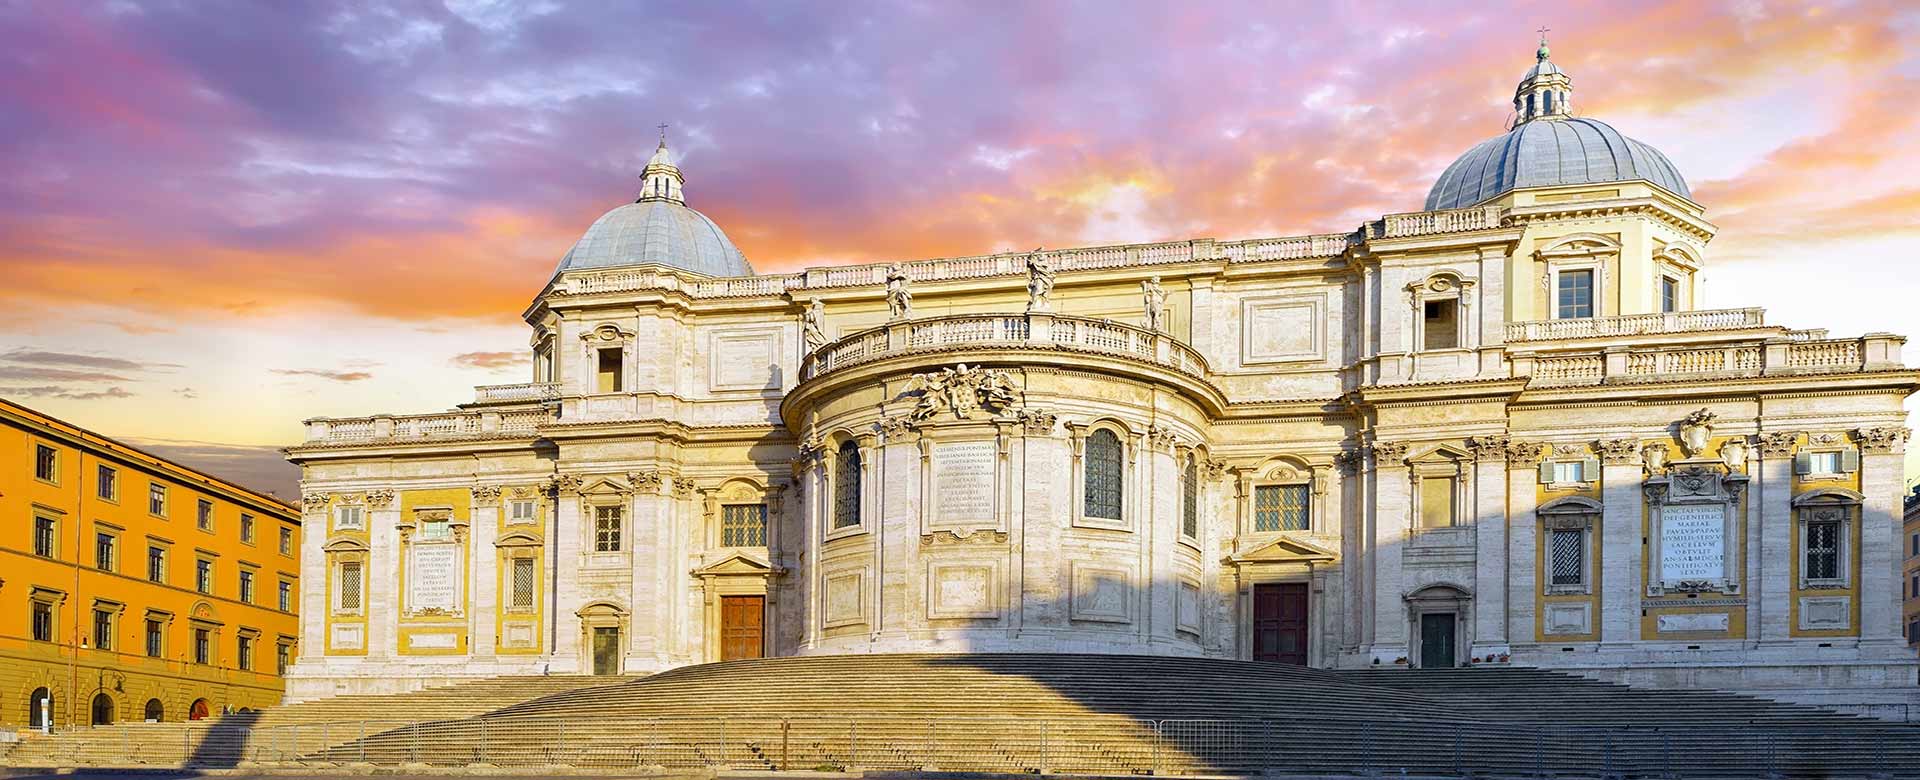 Basilica di Santa Maria Maggiore, Roma © BRIAN_KINNEY/AdobeStock